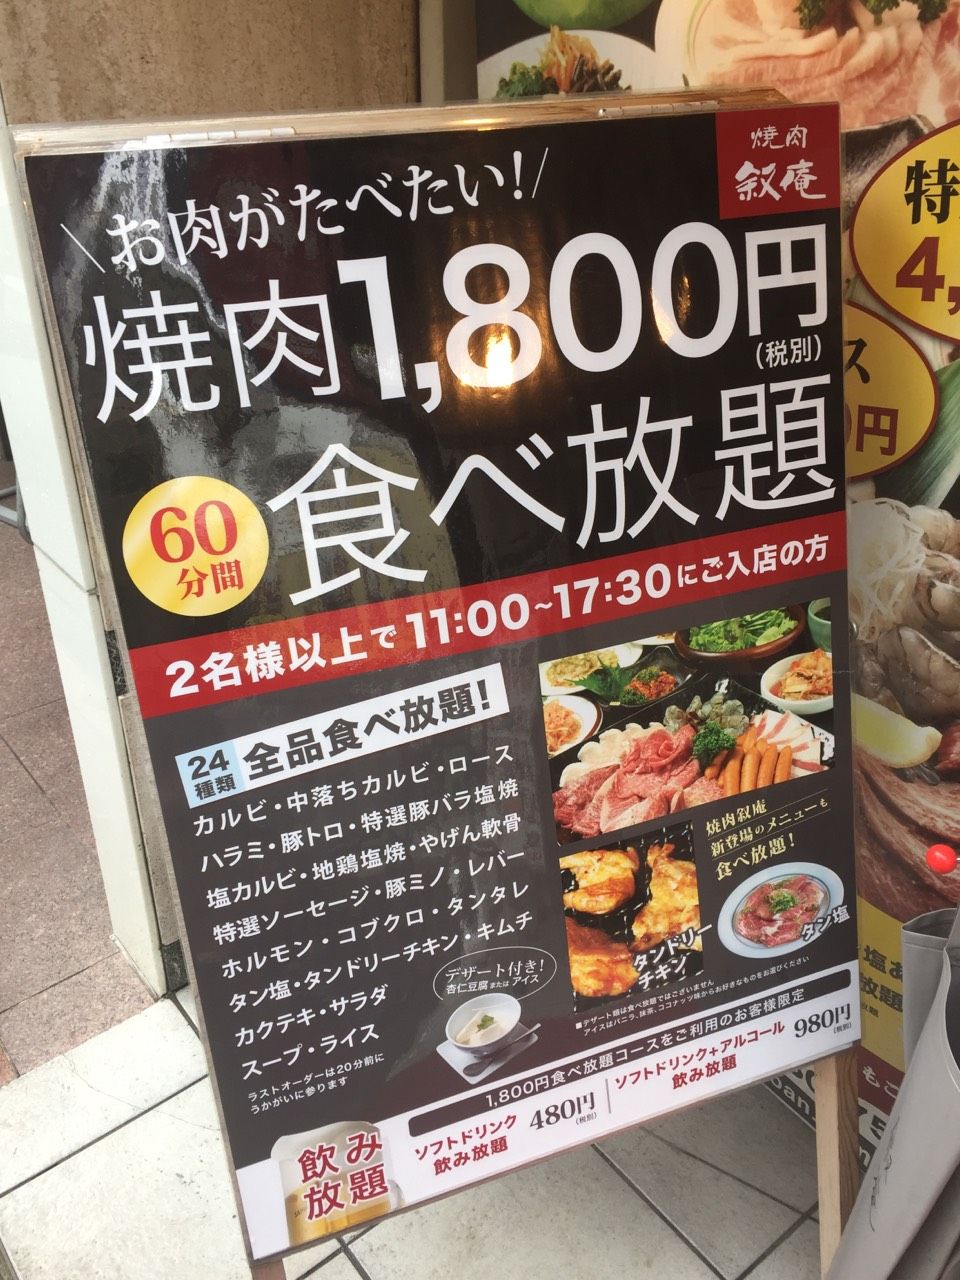 池袋西口の焼き肉屋 叙庵は1800円で食べ放題かつ大盛りがガチ といたま生活情報ブログ